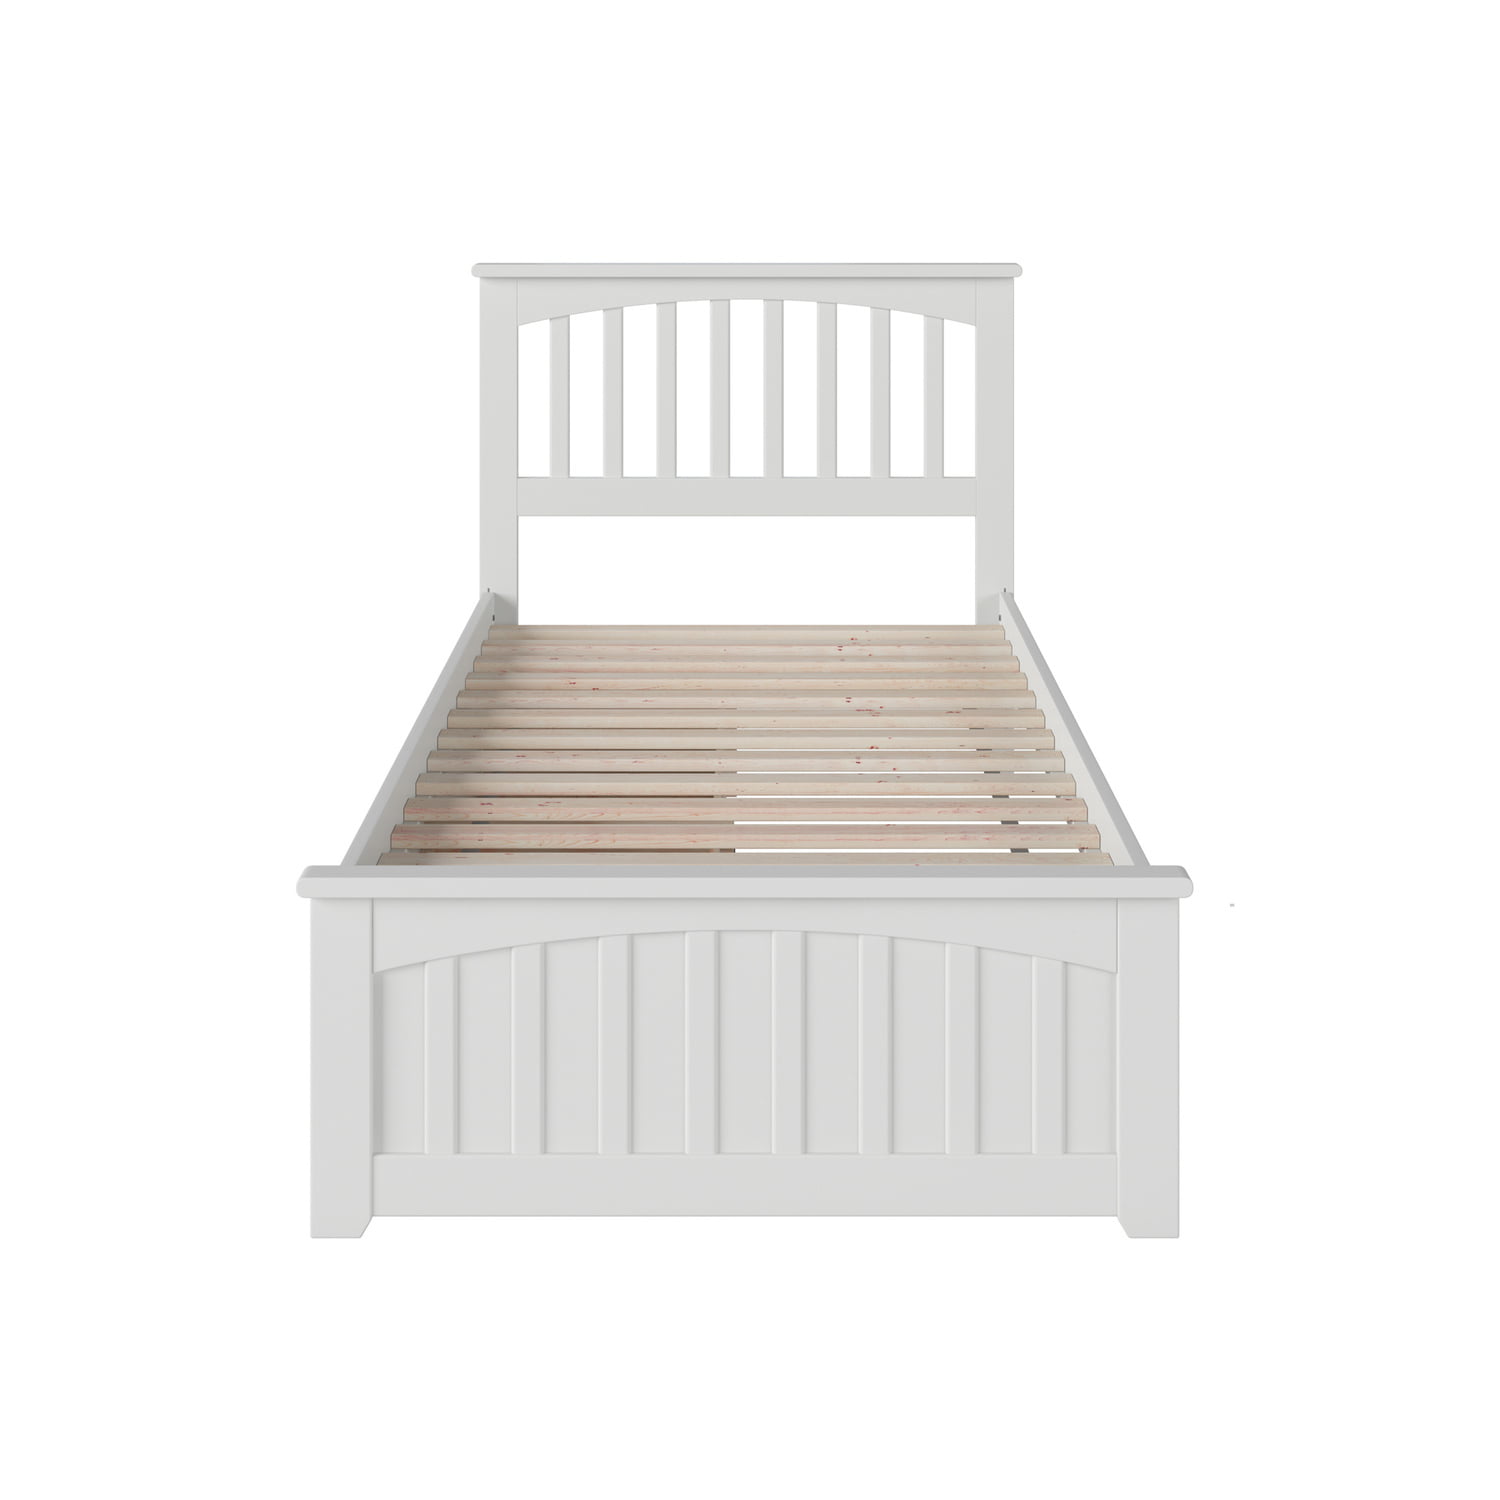 Atlantic Furniture Mission Platform Bed, White Wooden King Size Bed Frame Argos